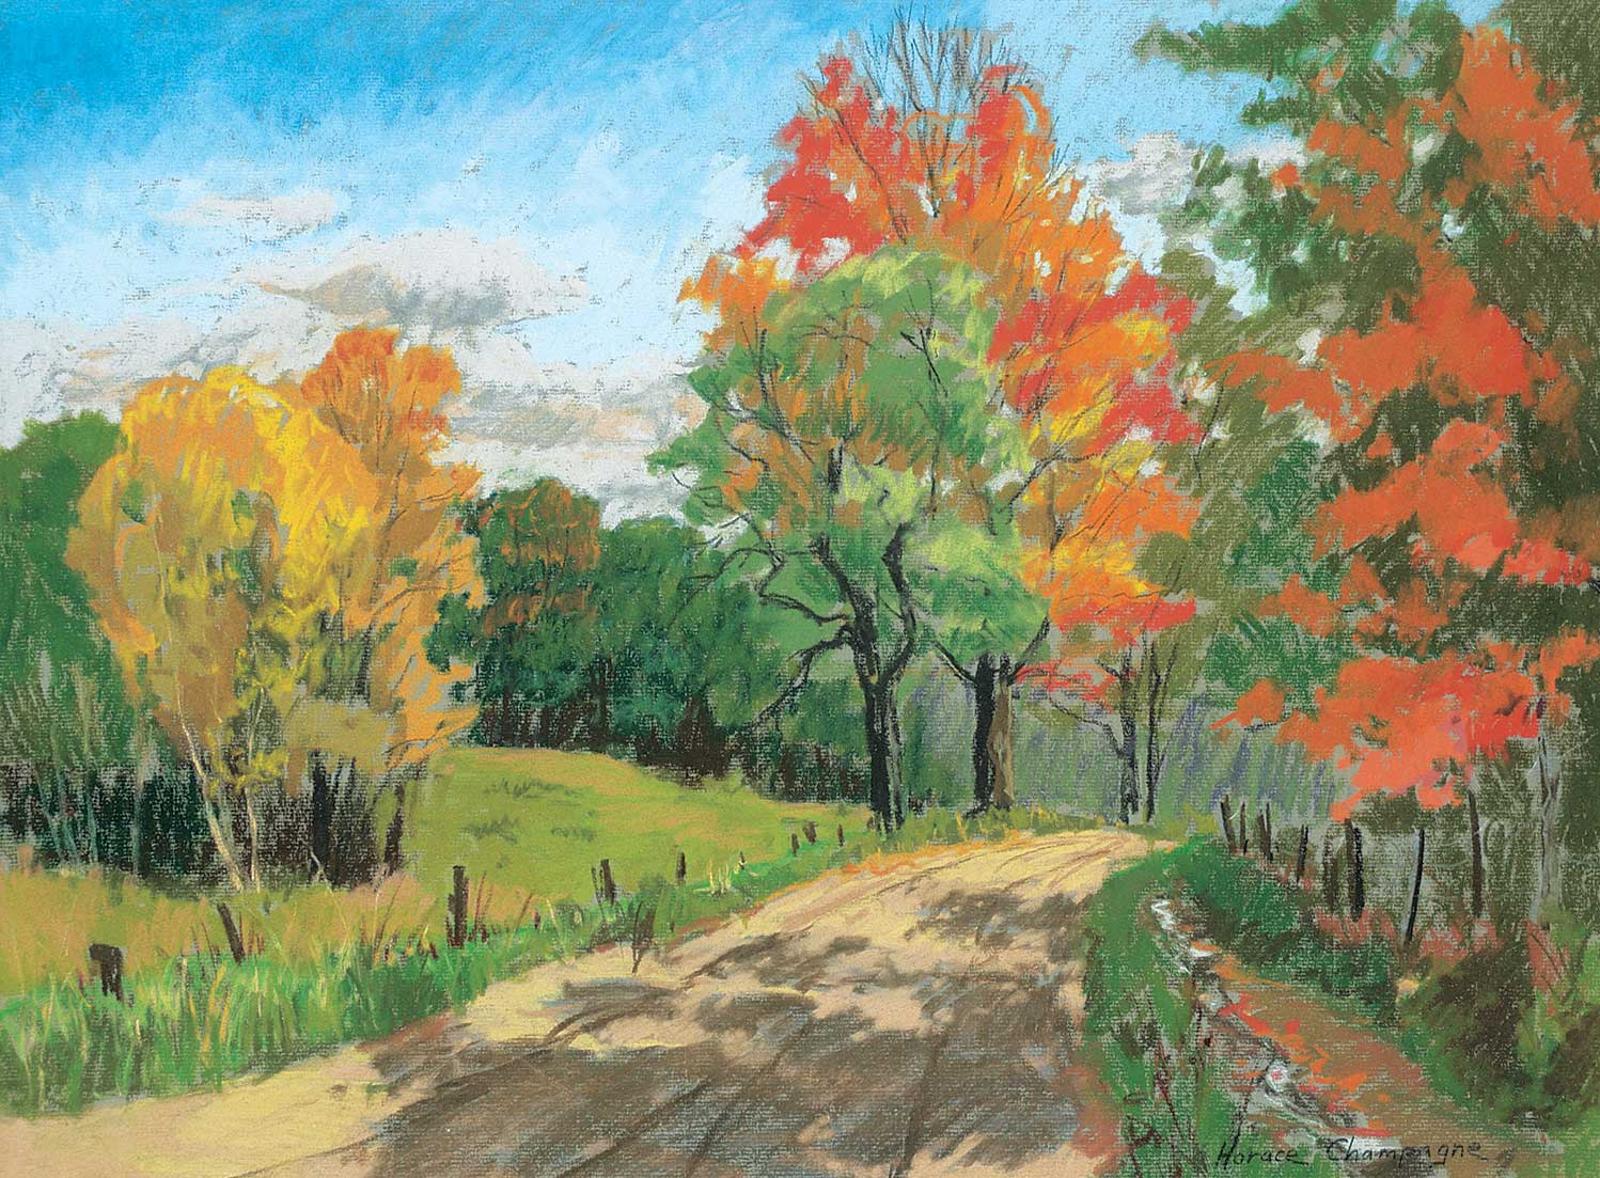 Horace Champagne (1937) - Autumn Road Near St. Angelique, Quebec